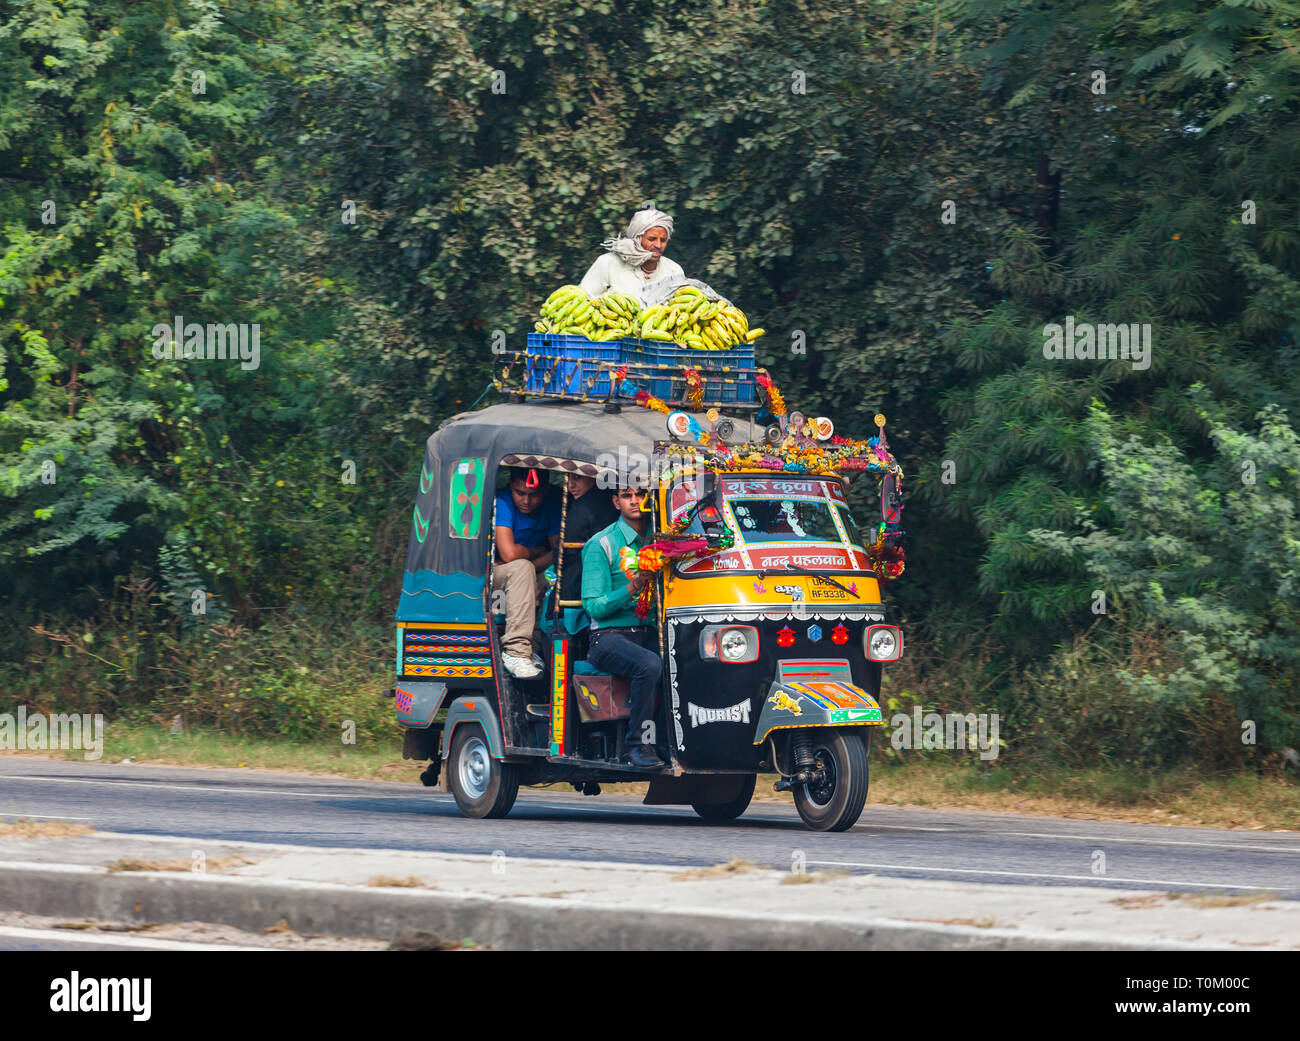 AGRA, INDIEN - November 15, 2012: Verkehr auf den Straßen von Indien. Große indische Familien reisen in ein kleines Auto. Indische Menschen und ihre bunten Kult Stockfoto